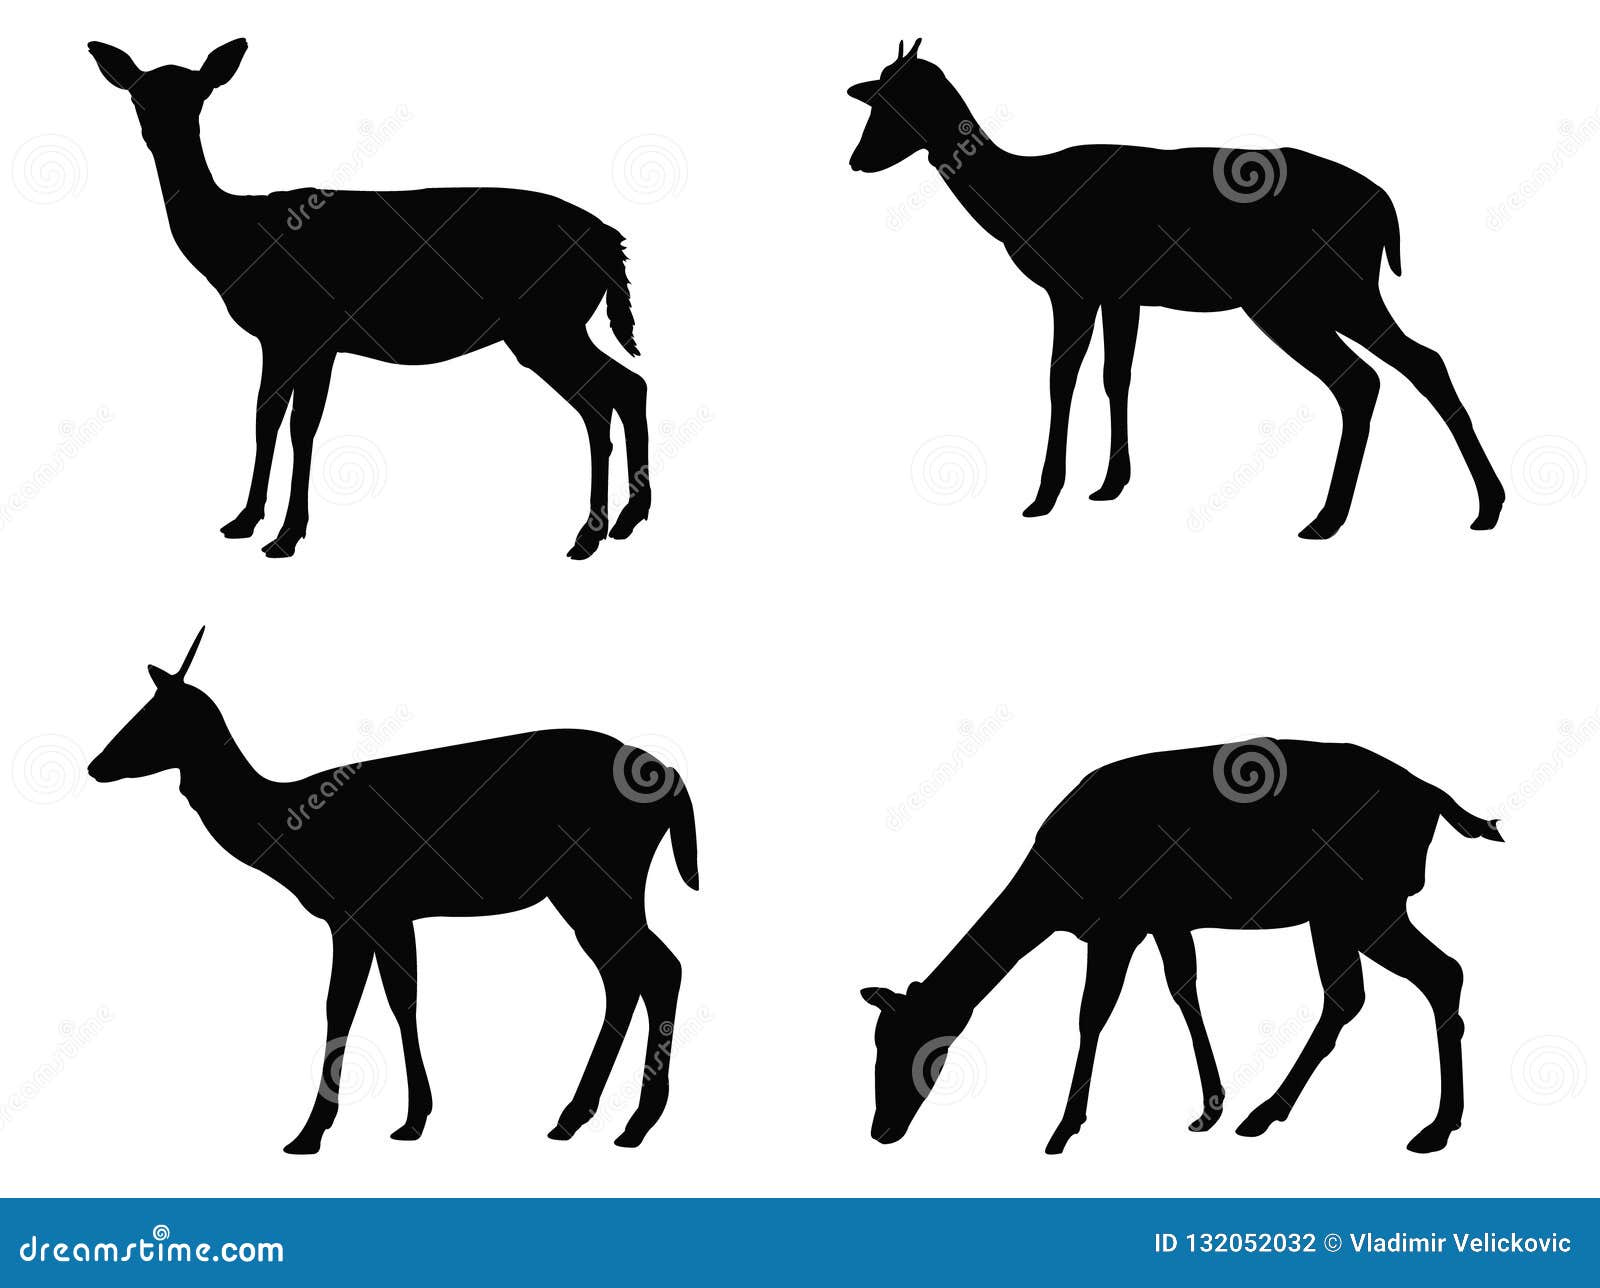 doe or deer silhouette - hoofed ruminant mammal